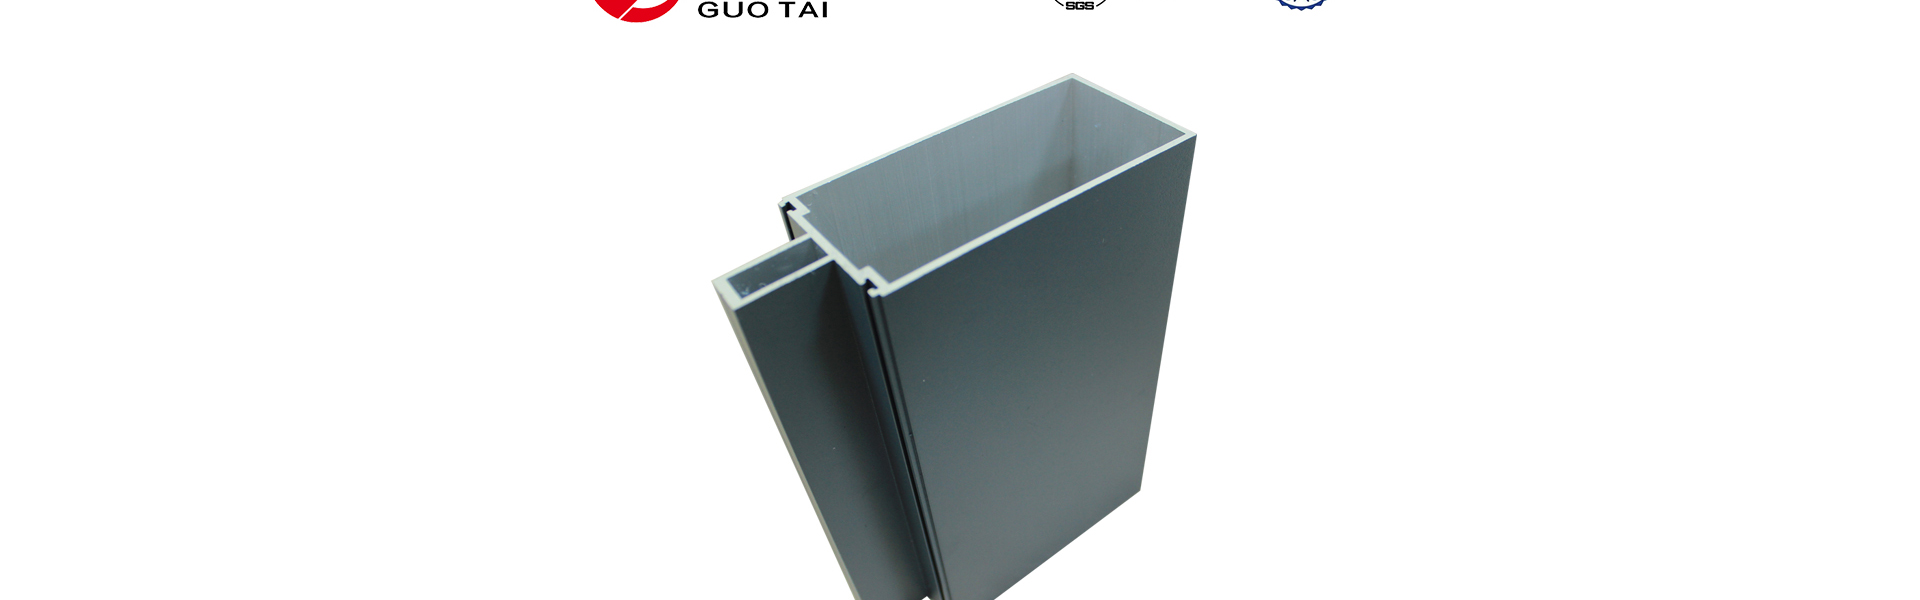 Anhui Guotai Aluminum Co.,Ltd